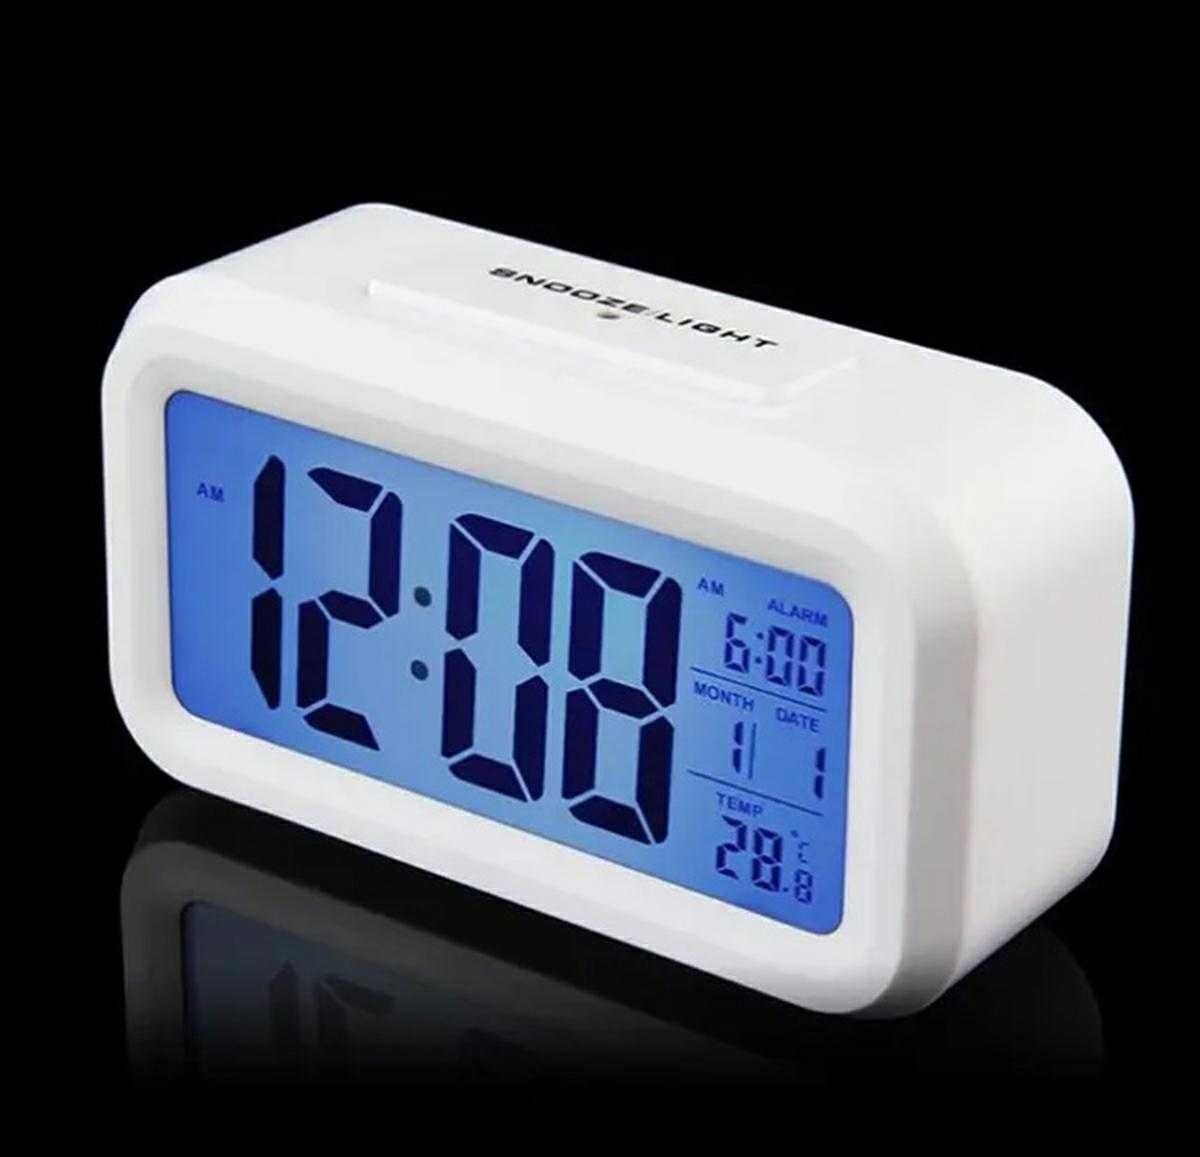 NEW! Cyfrowy zegarek budzik LCD podświetlany termometr kalendarz BIAŁY